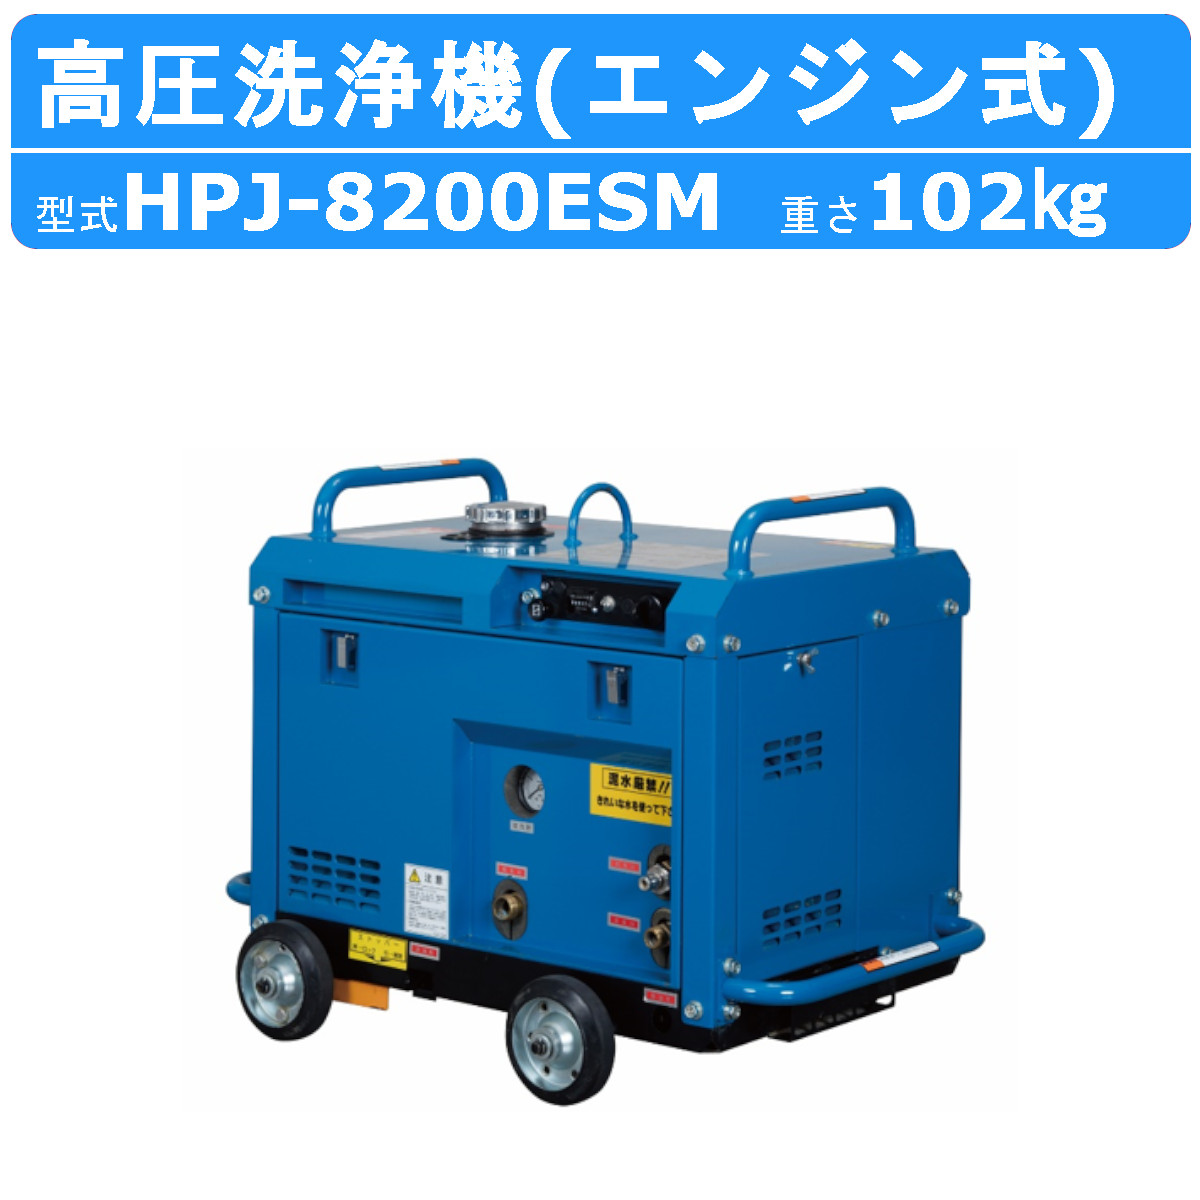 ツルミ 高圧洗浄機 HPJ-8200ESM エンジン式 防音 ノズル・吐水ホース付 